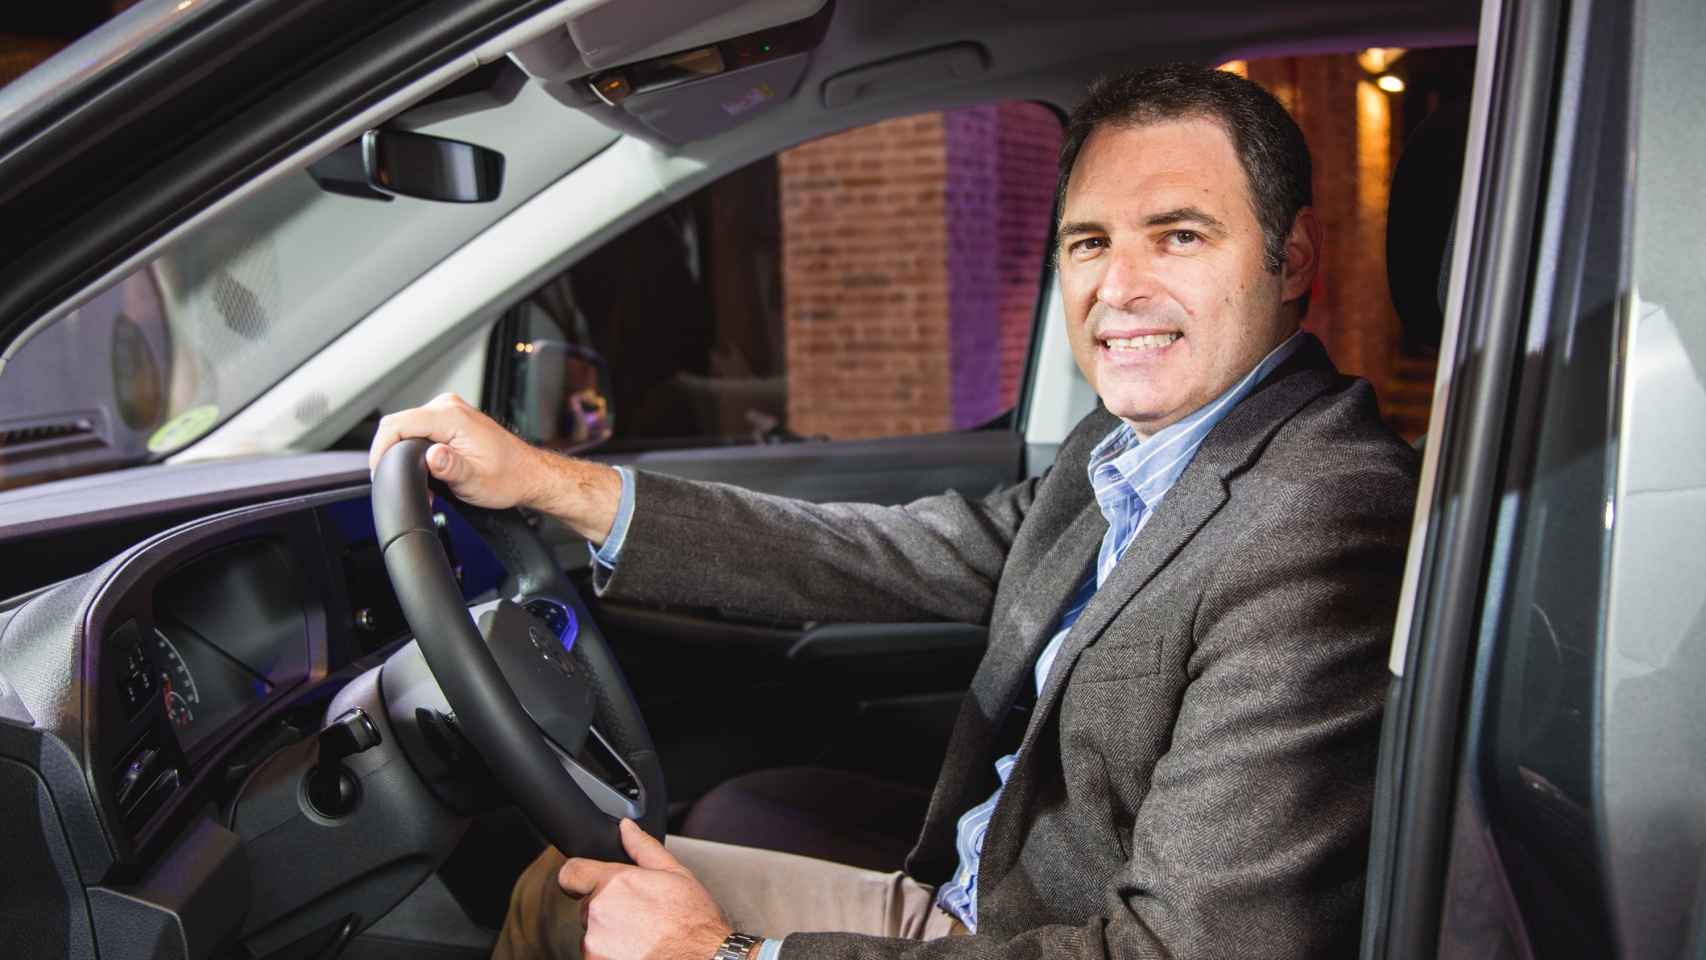 Alberto Teichman, director general de Volkswagen Vehículos Comerciales en España.